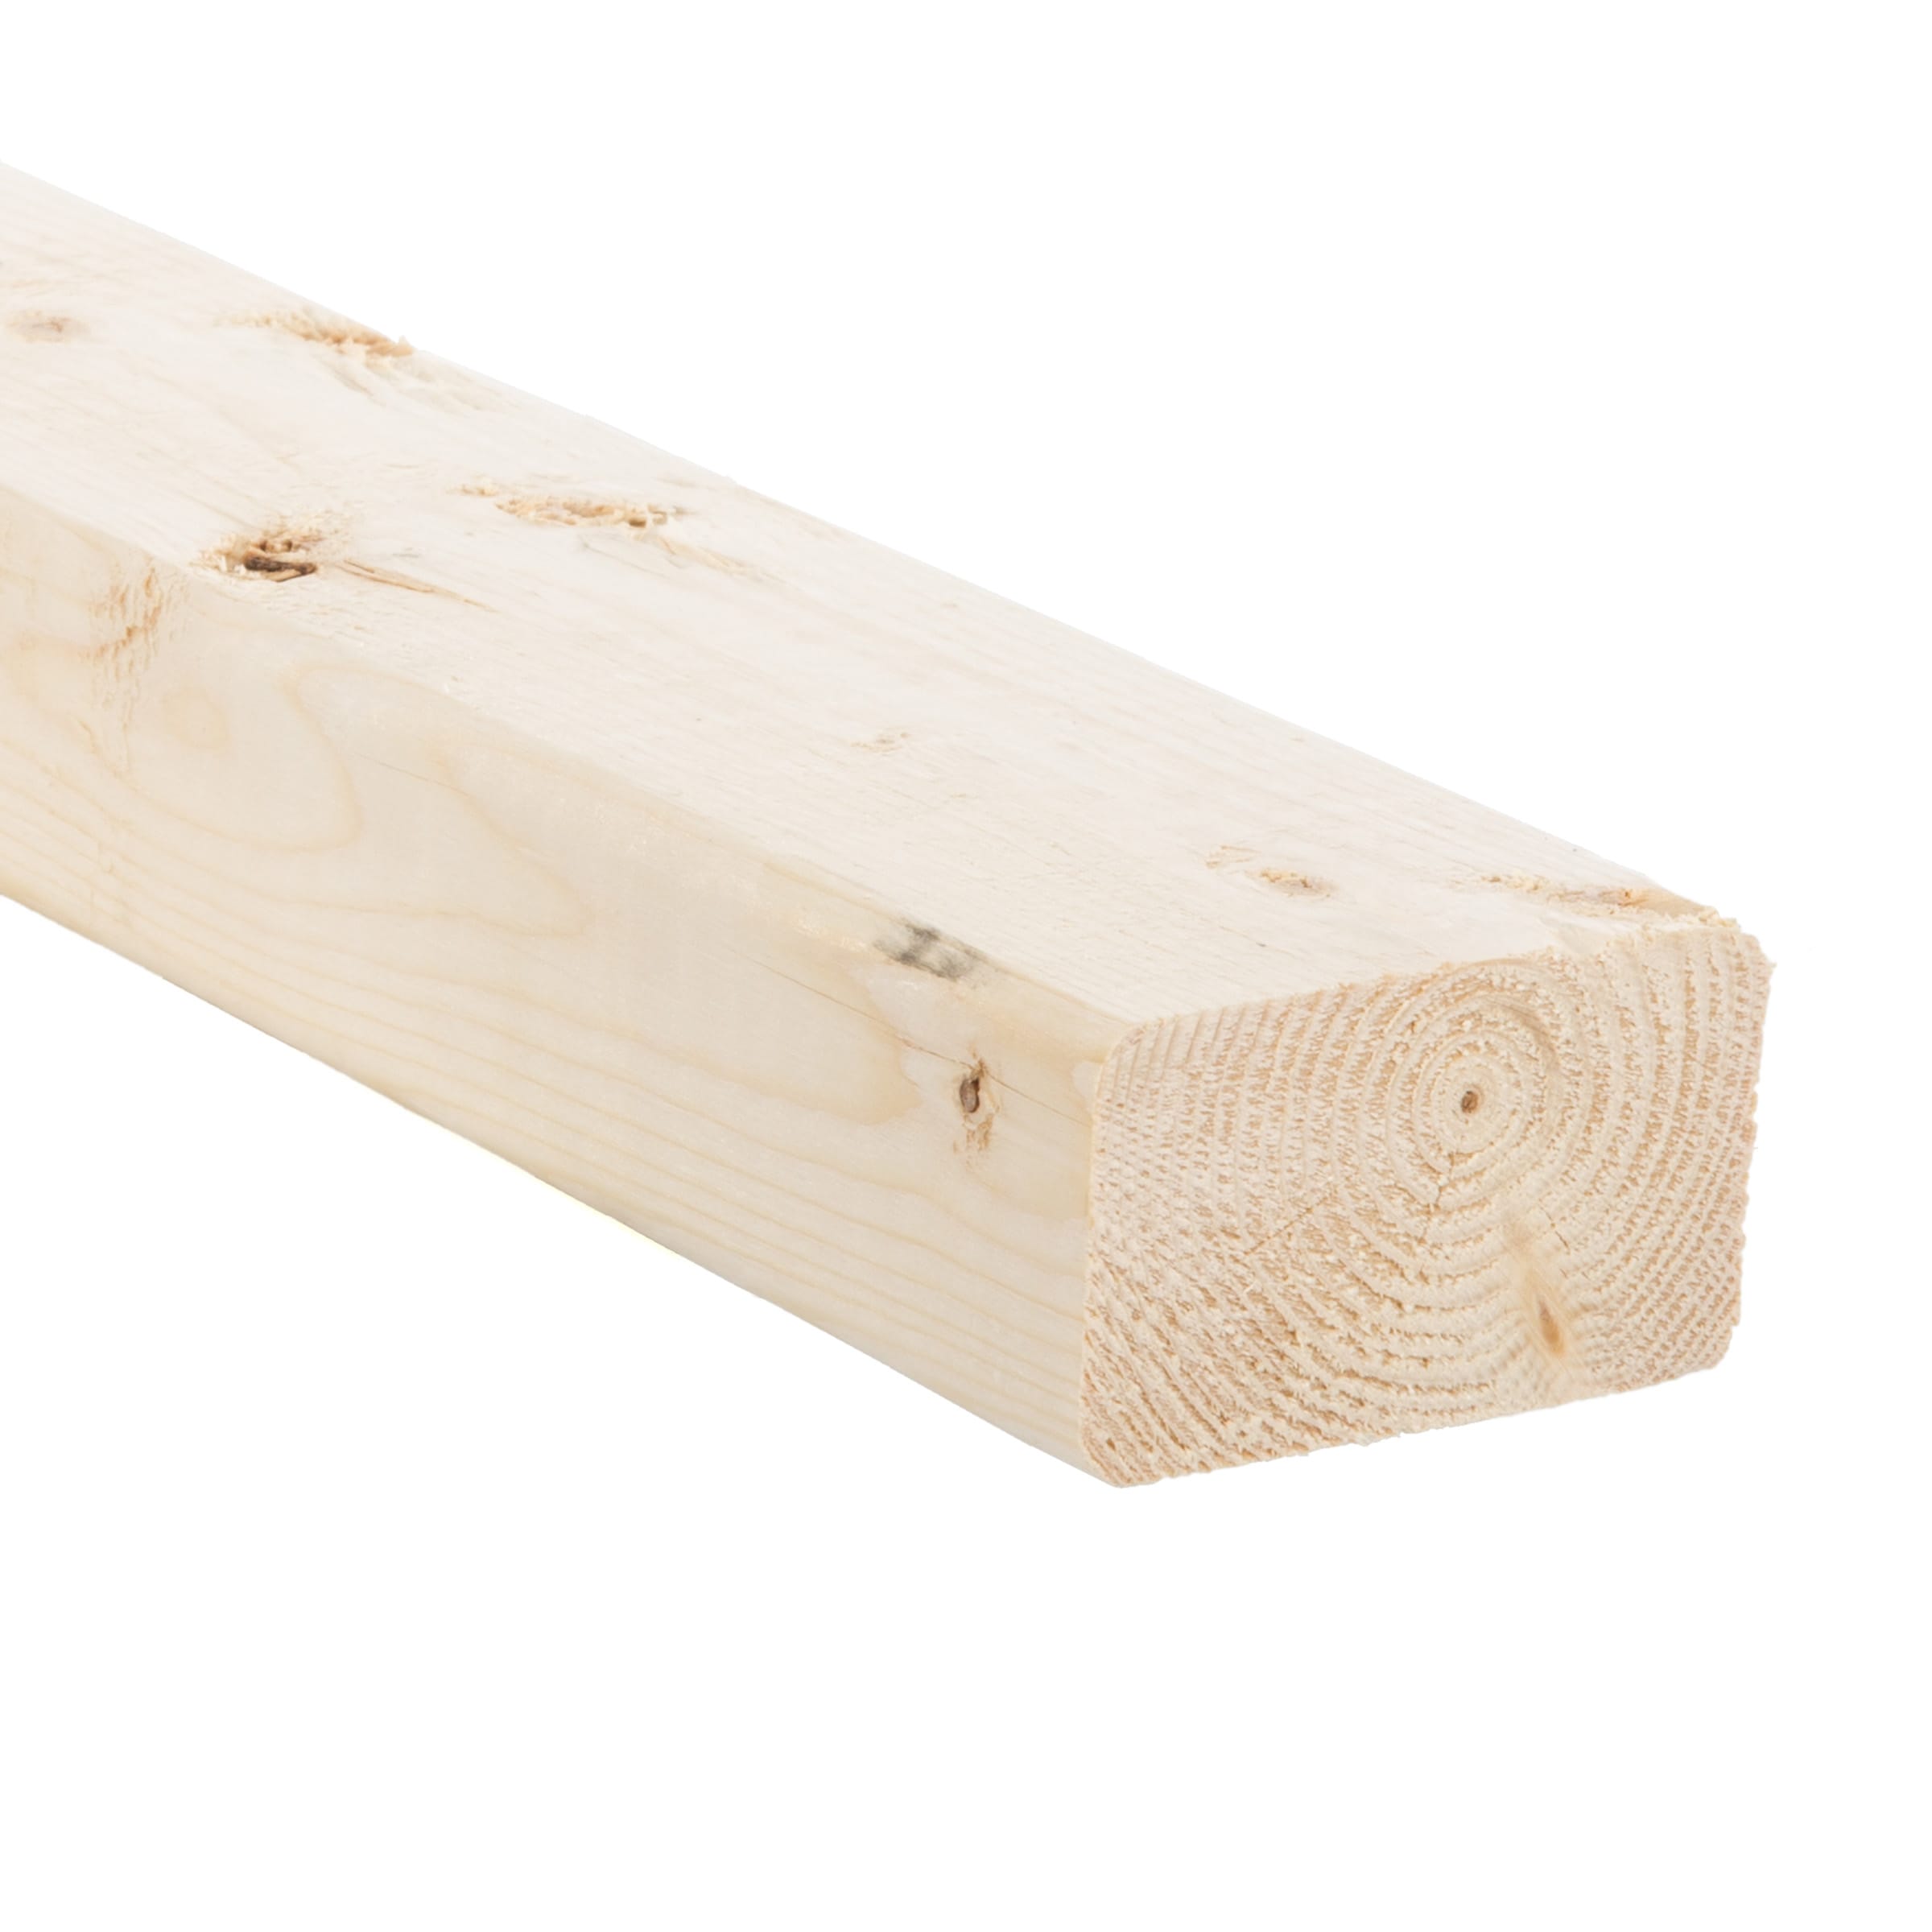 Reliabilt 2 In X 4 In X 12 Ft Hemlock Fir Lumber In The Dimensional Lumber Department At Lowes Com